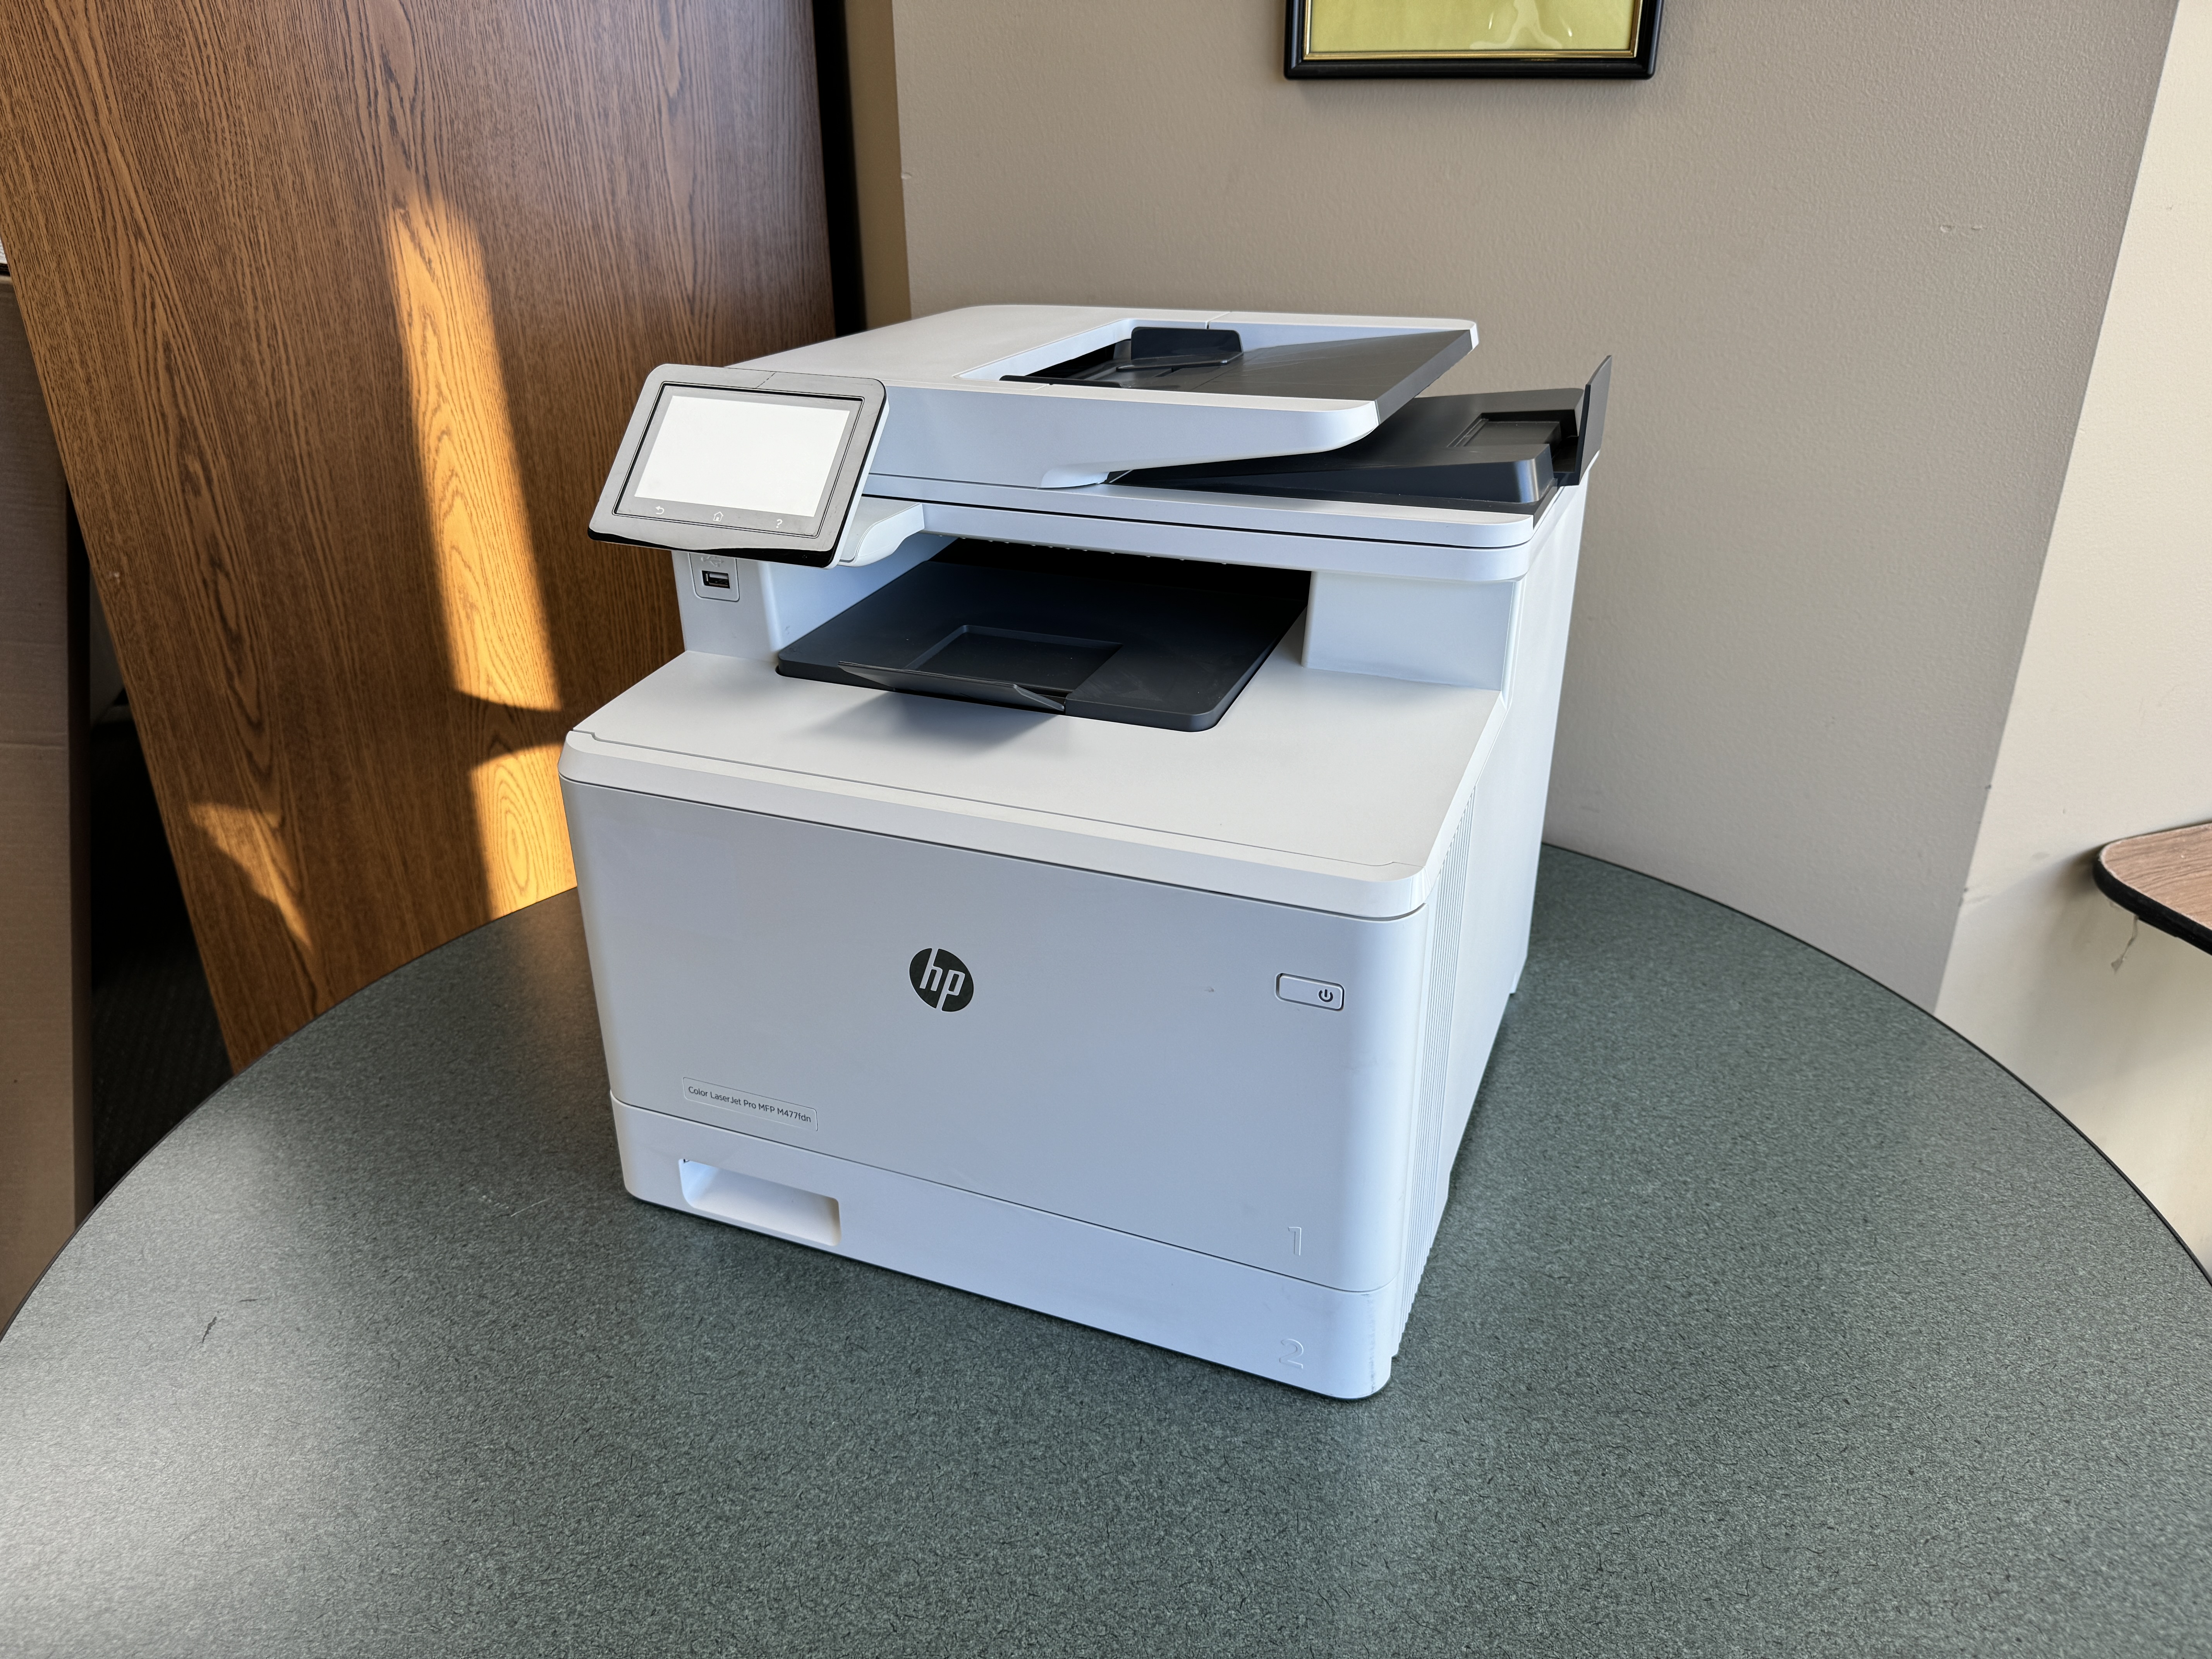 HP M477 color printer leasing . 